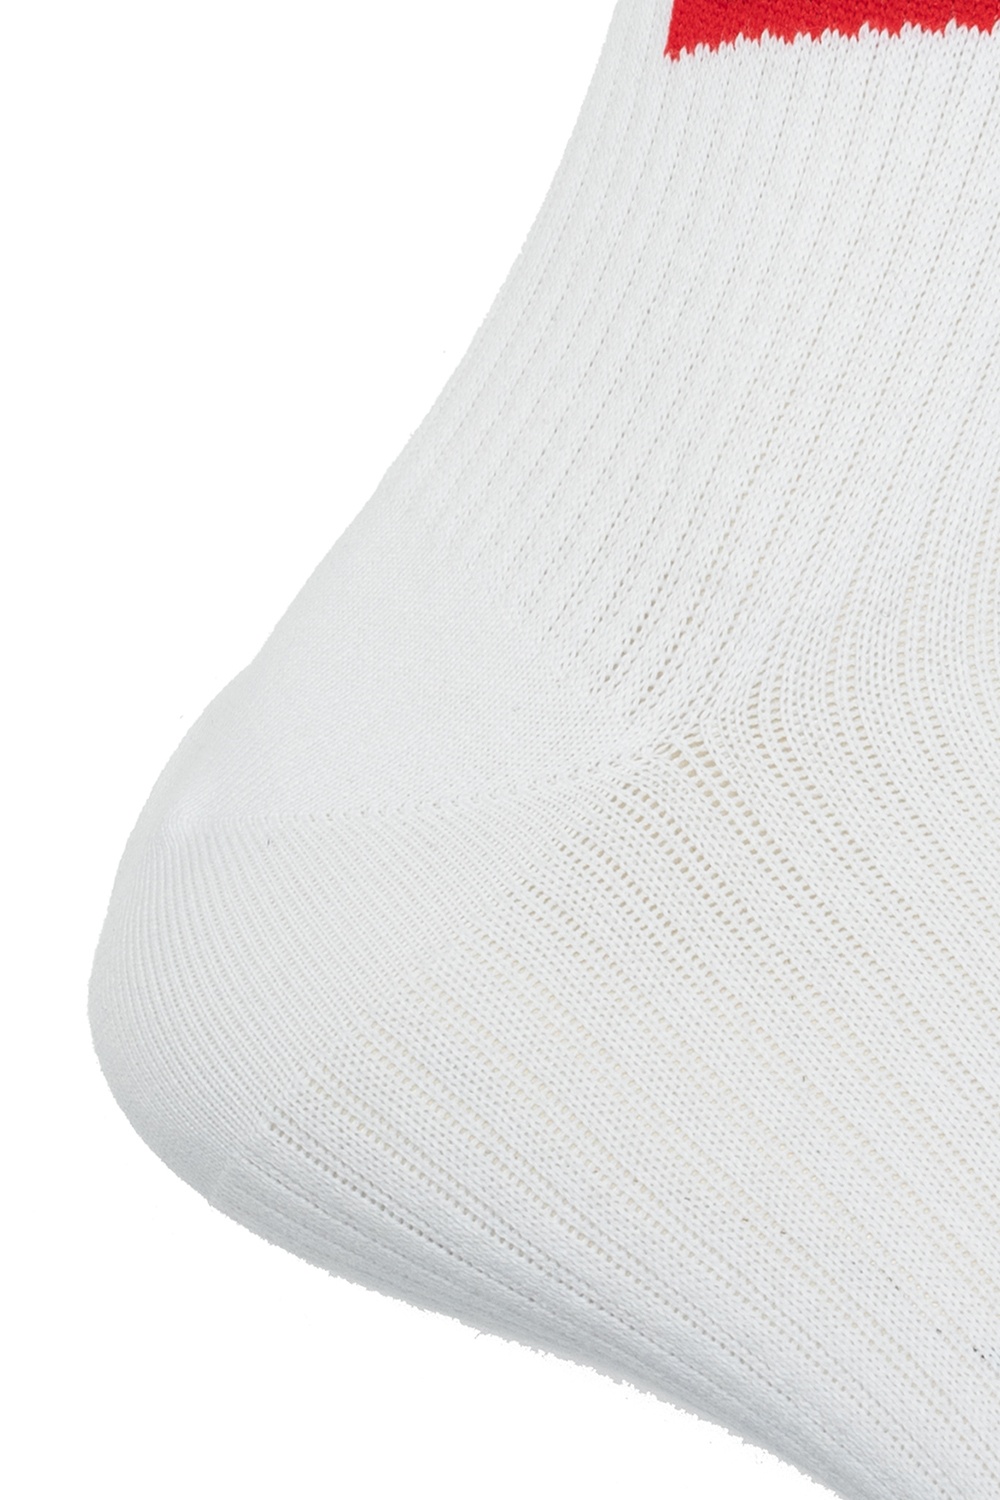 givenchy runway Logo socks